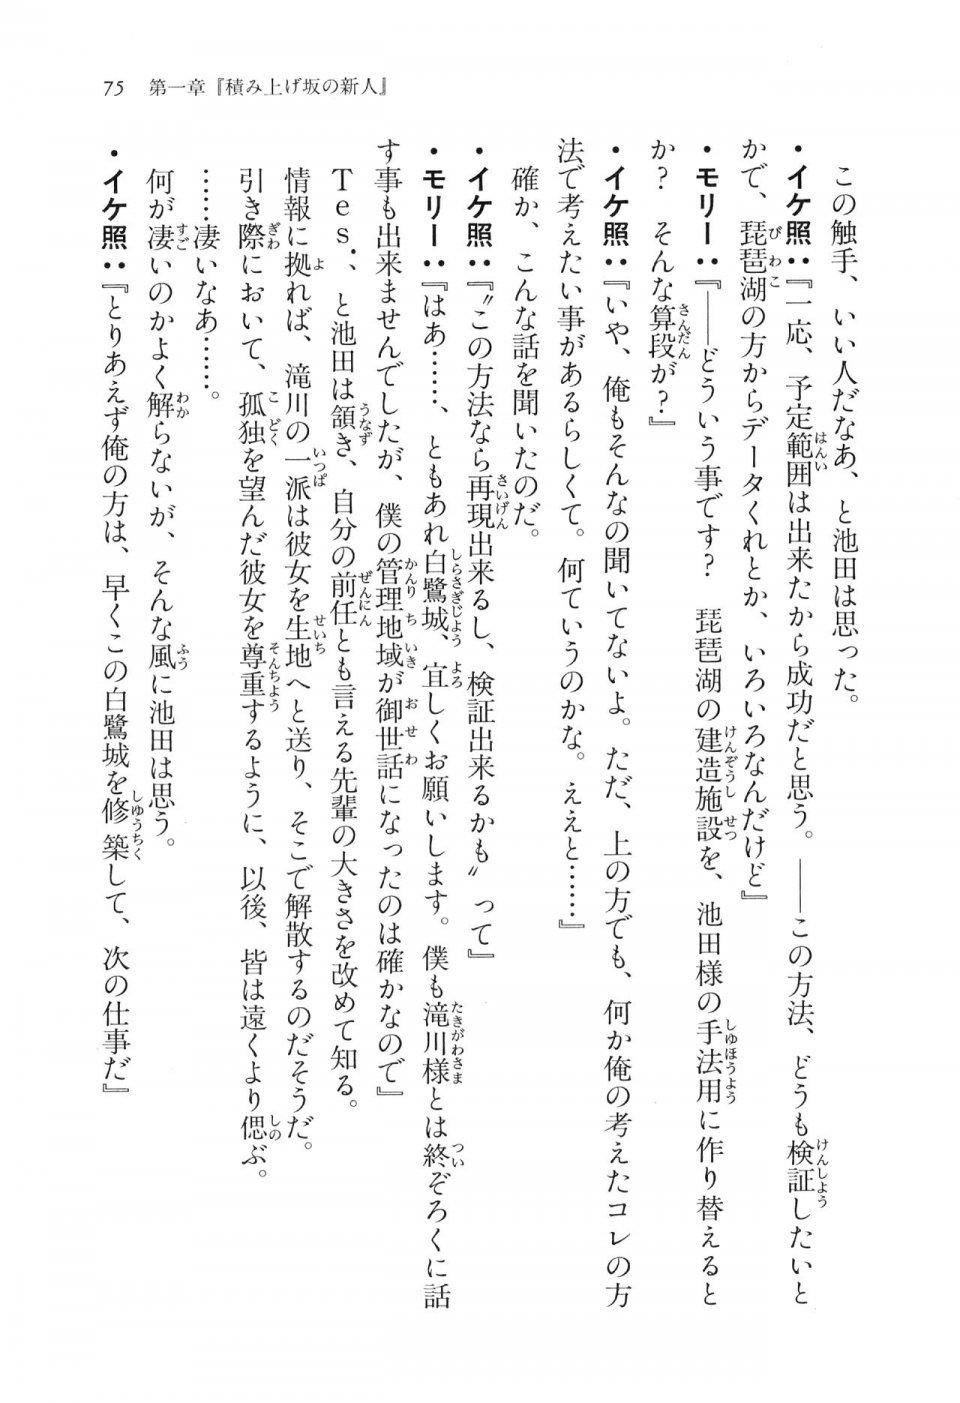 Kyoukai Senjou no Horizon LN Vol 16(7A) - Photo #75